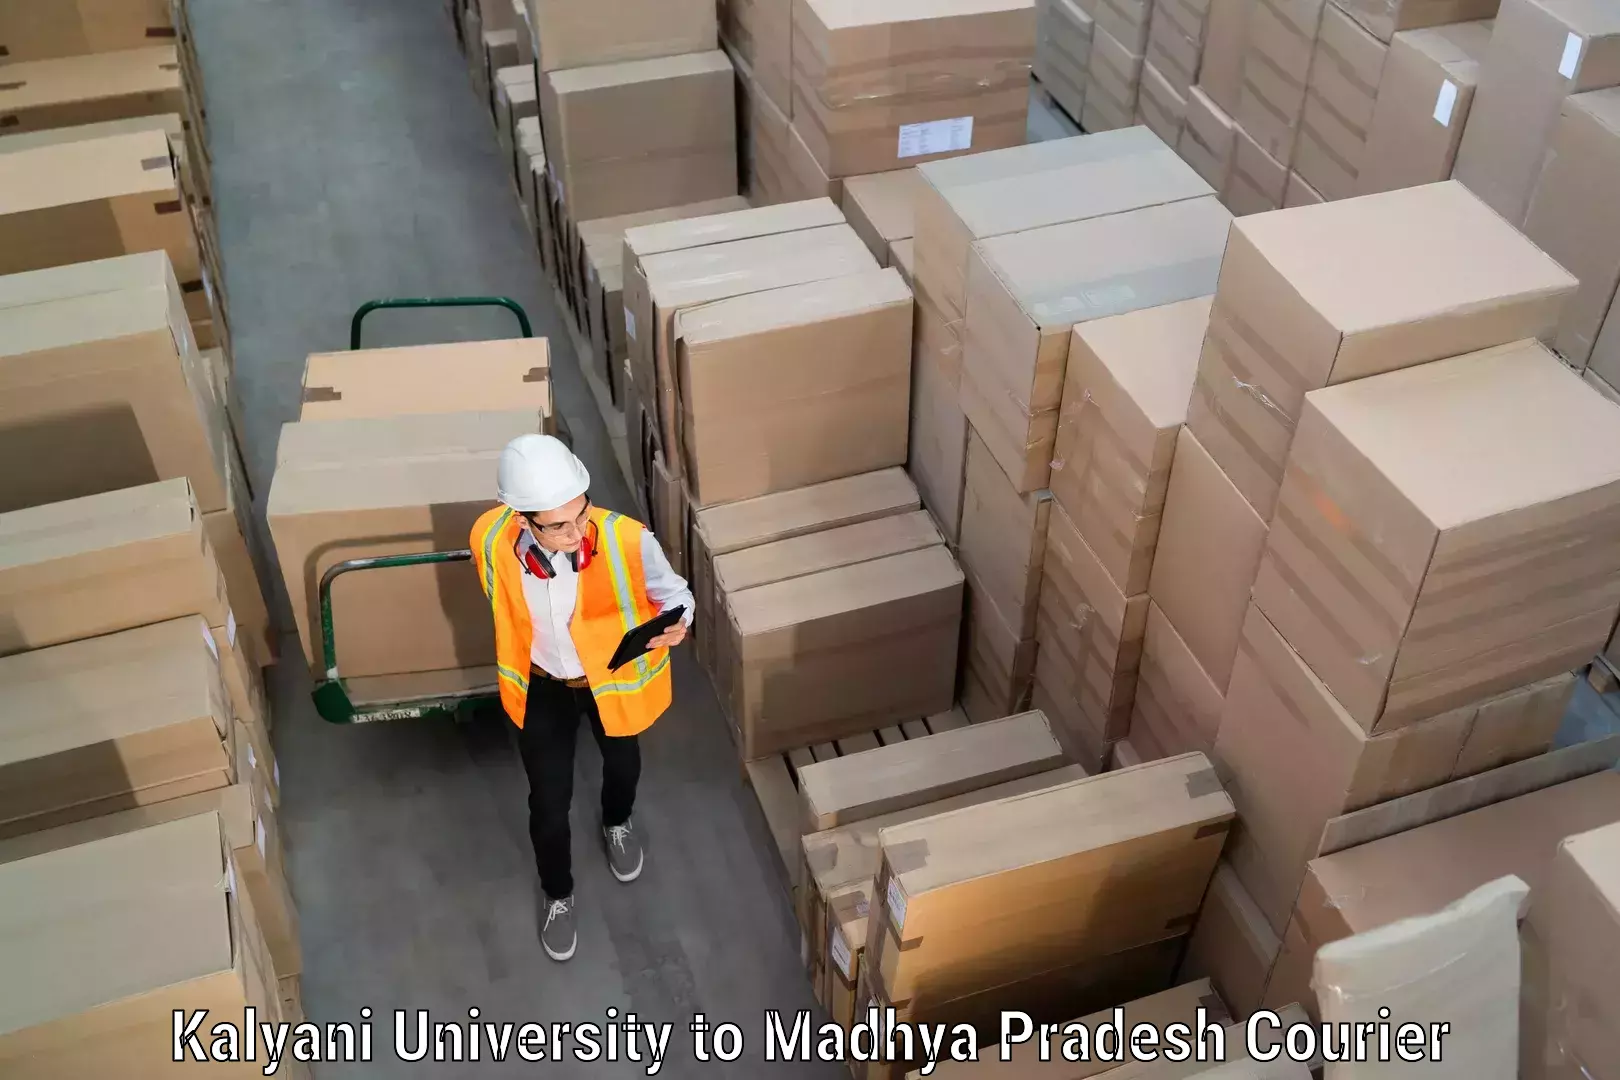 Furniture transport experts Kalyani University to Madhya Pradesh